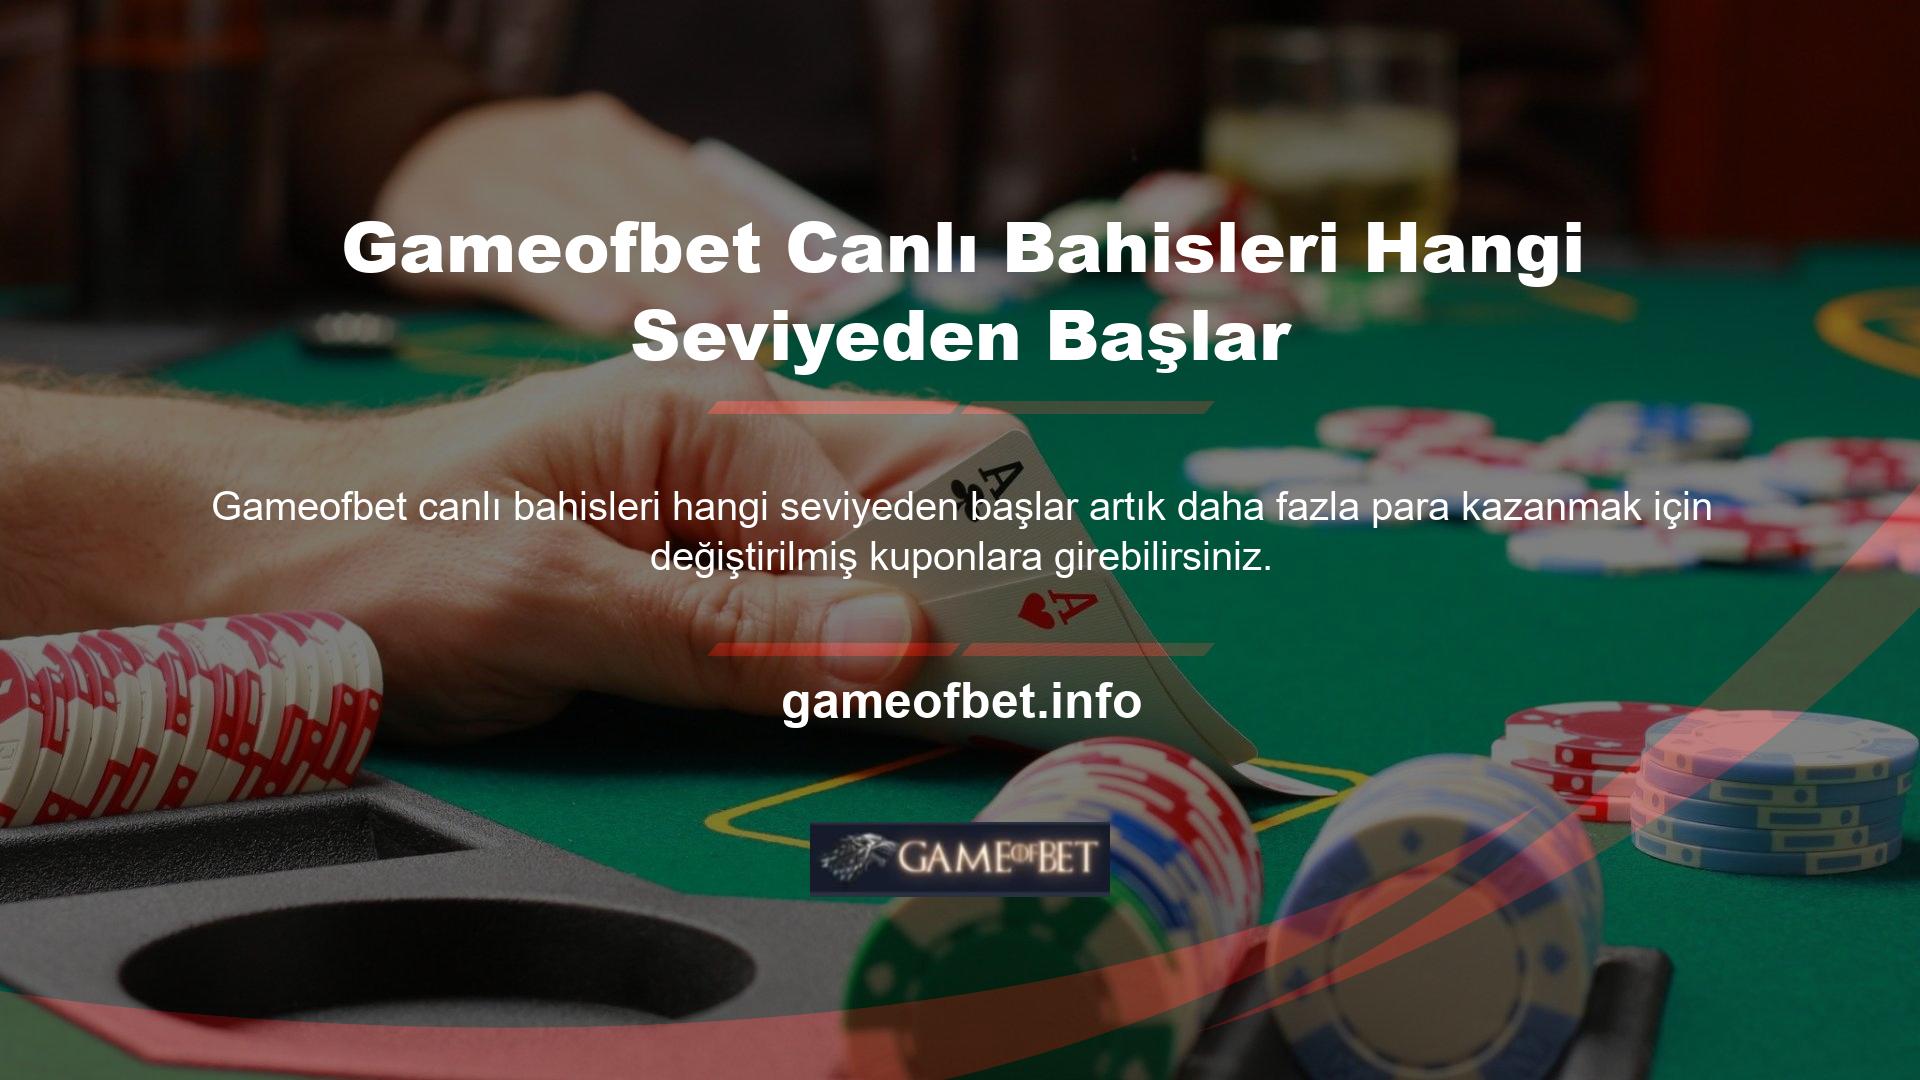 Ülkemizdeki casino otoriteleri tarafından yasal kabul edilen işletmelerin canlı bahis oynamasına izin verilmemektedir